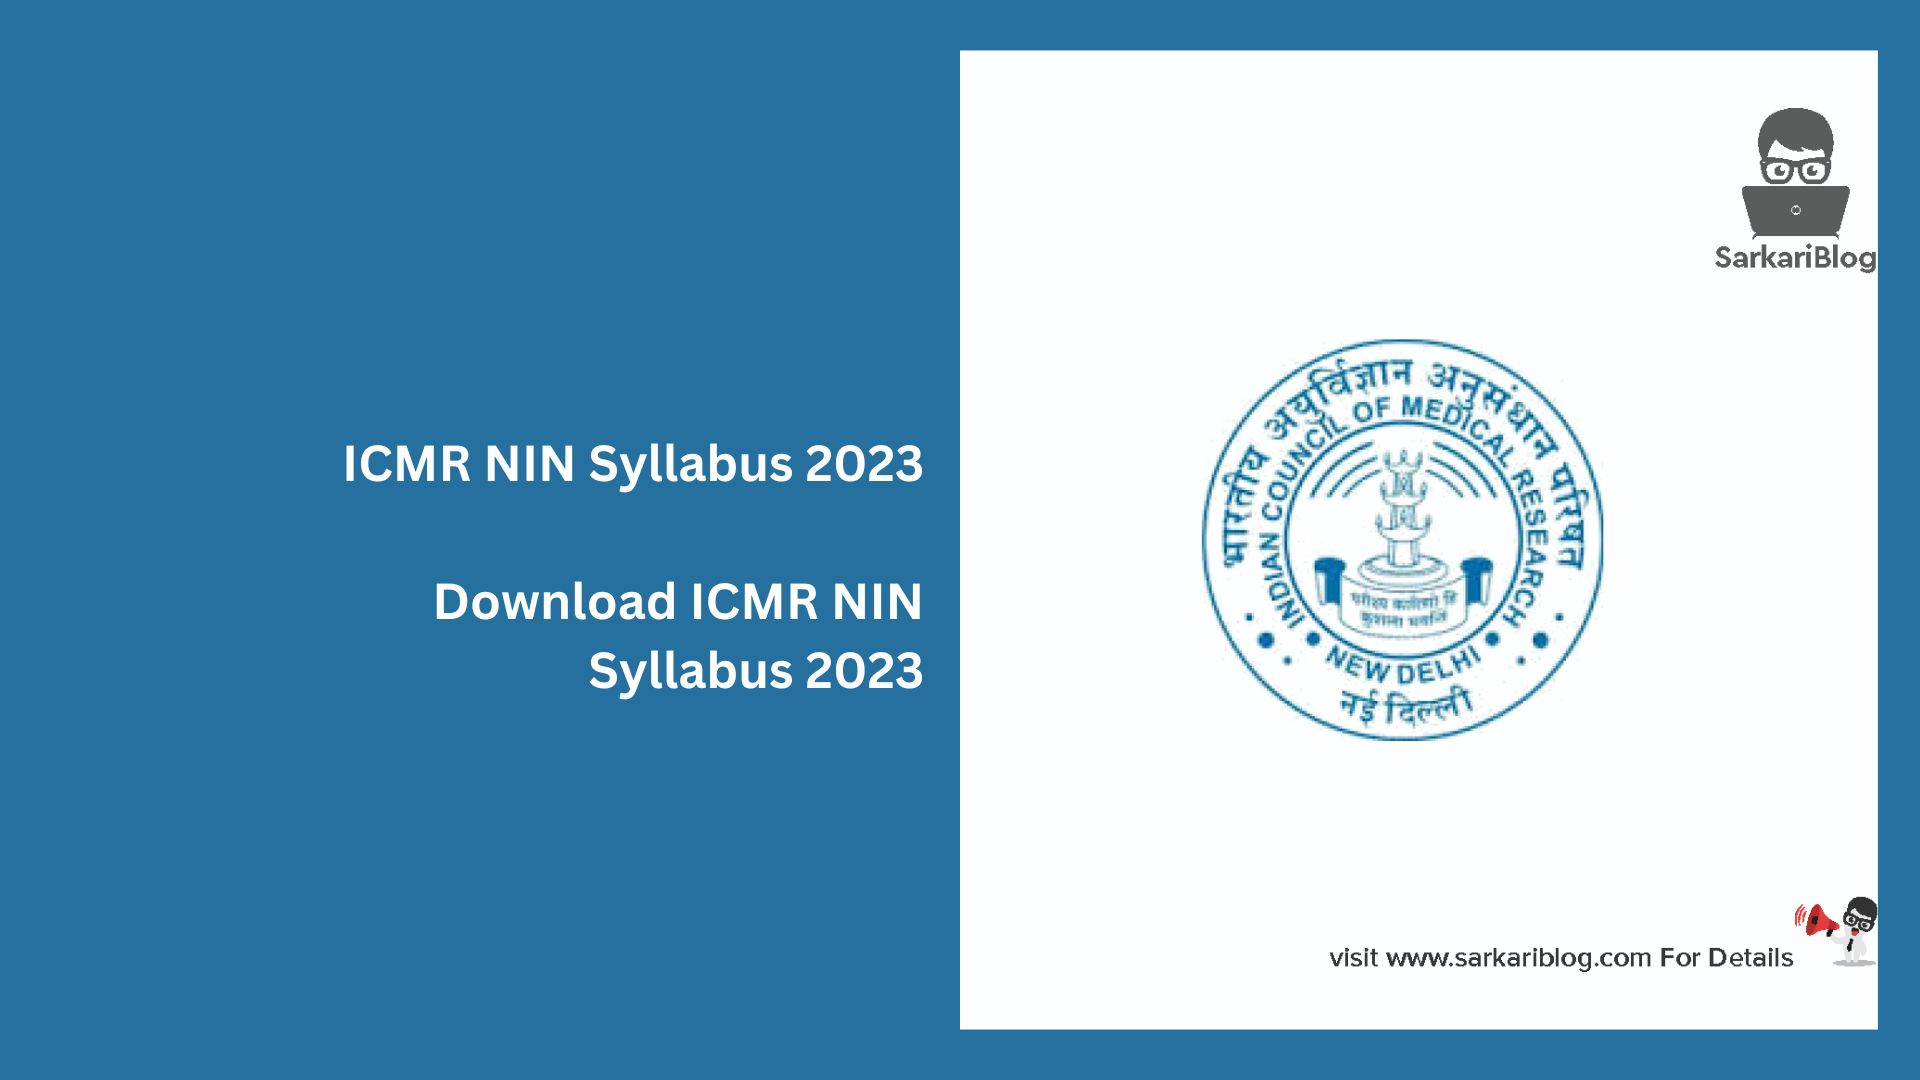 ICMR NIN Syllabus 2023